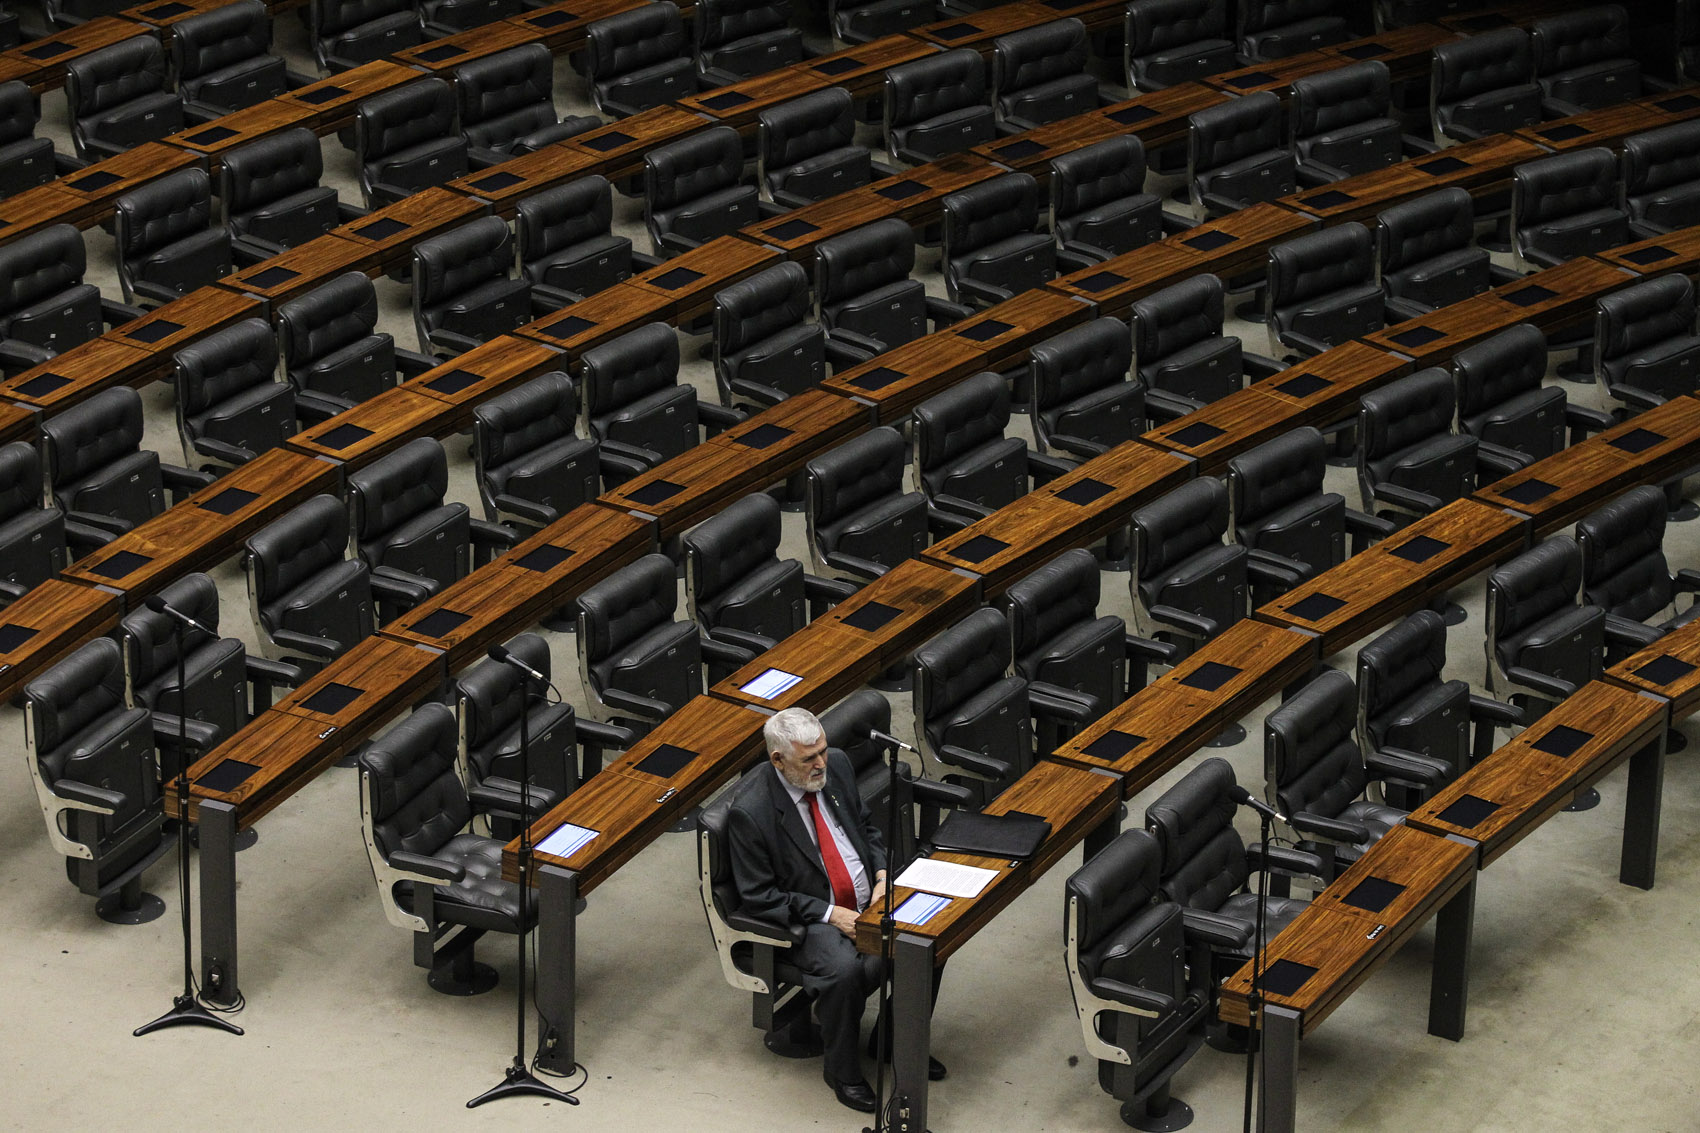 O deputado Luiz Couto (PT-PB) é visto sozinho no plenário da Câmara dos Deputados, em Brasília, durante sessão não deliberativa realizada na tarde desta quarta-feira (3), véspera de feriado prolongado